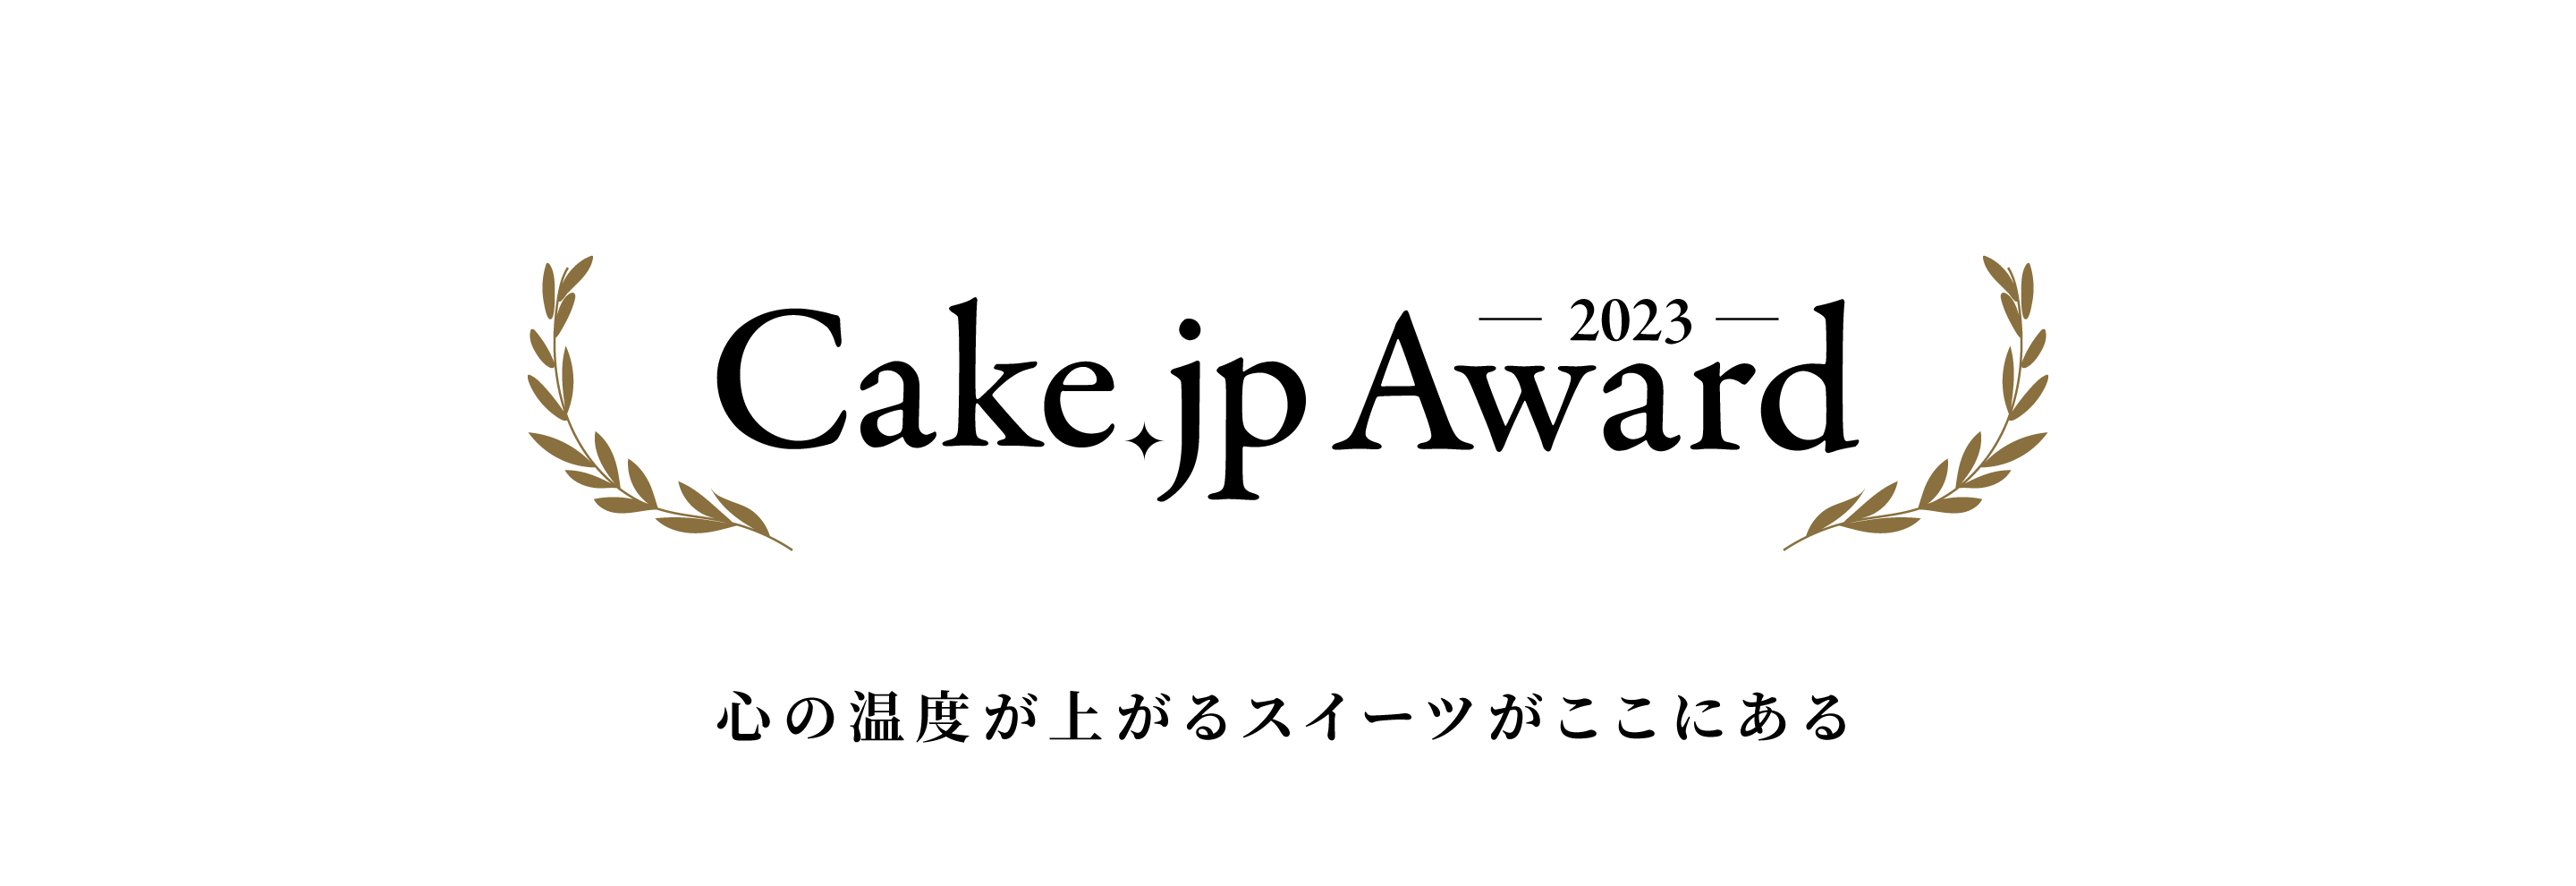 Cake.jp Award2023 心の温度が上がるスイーツがここにある